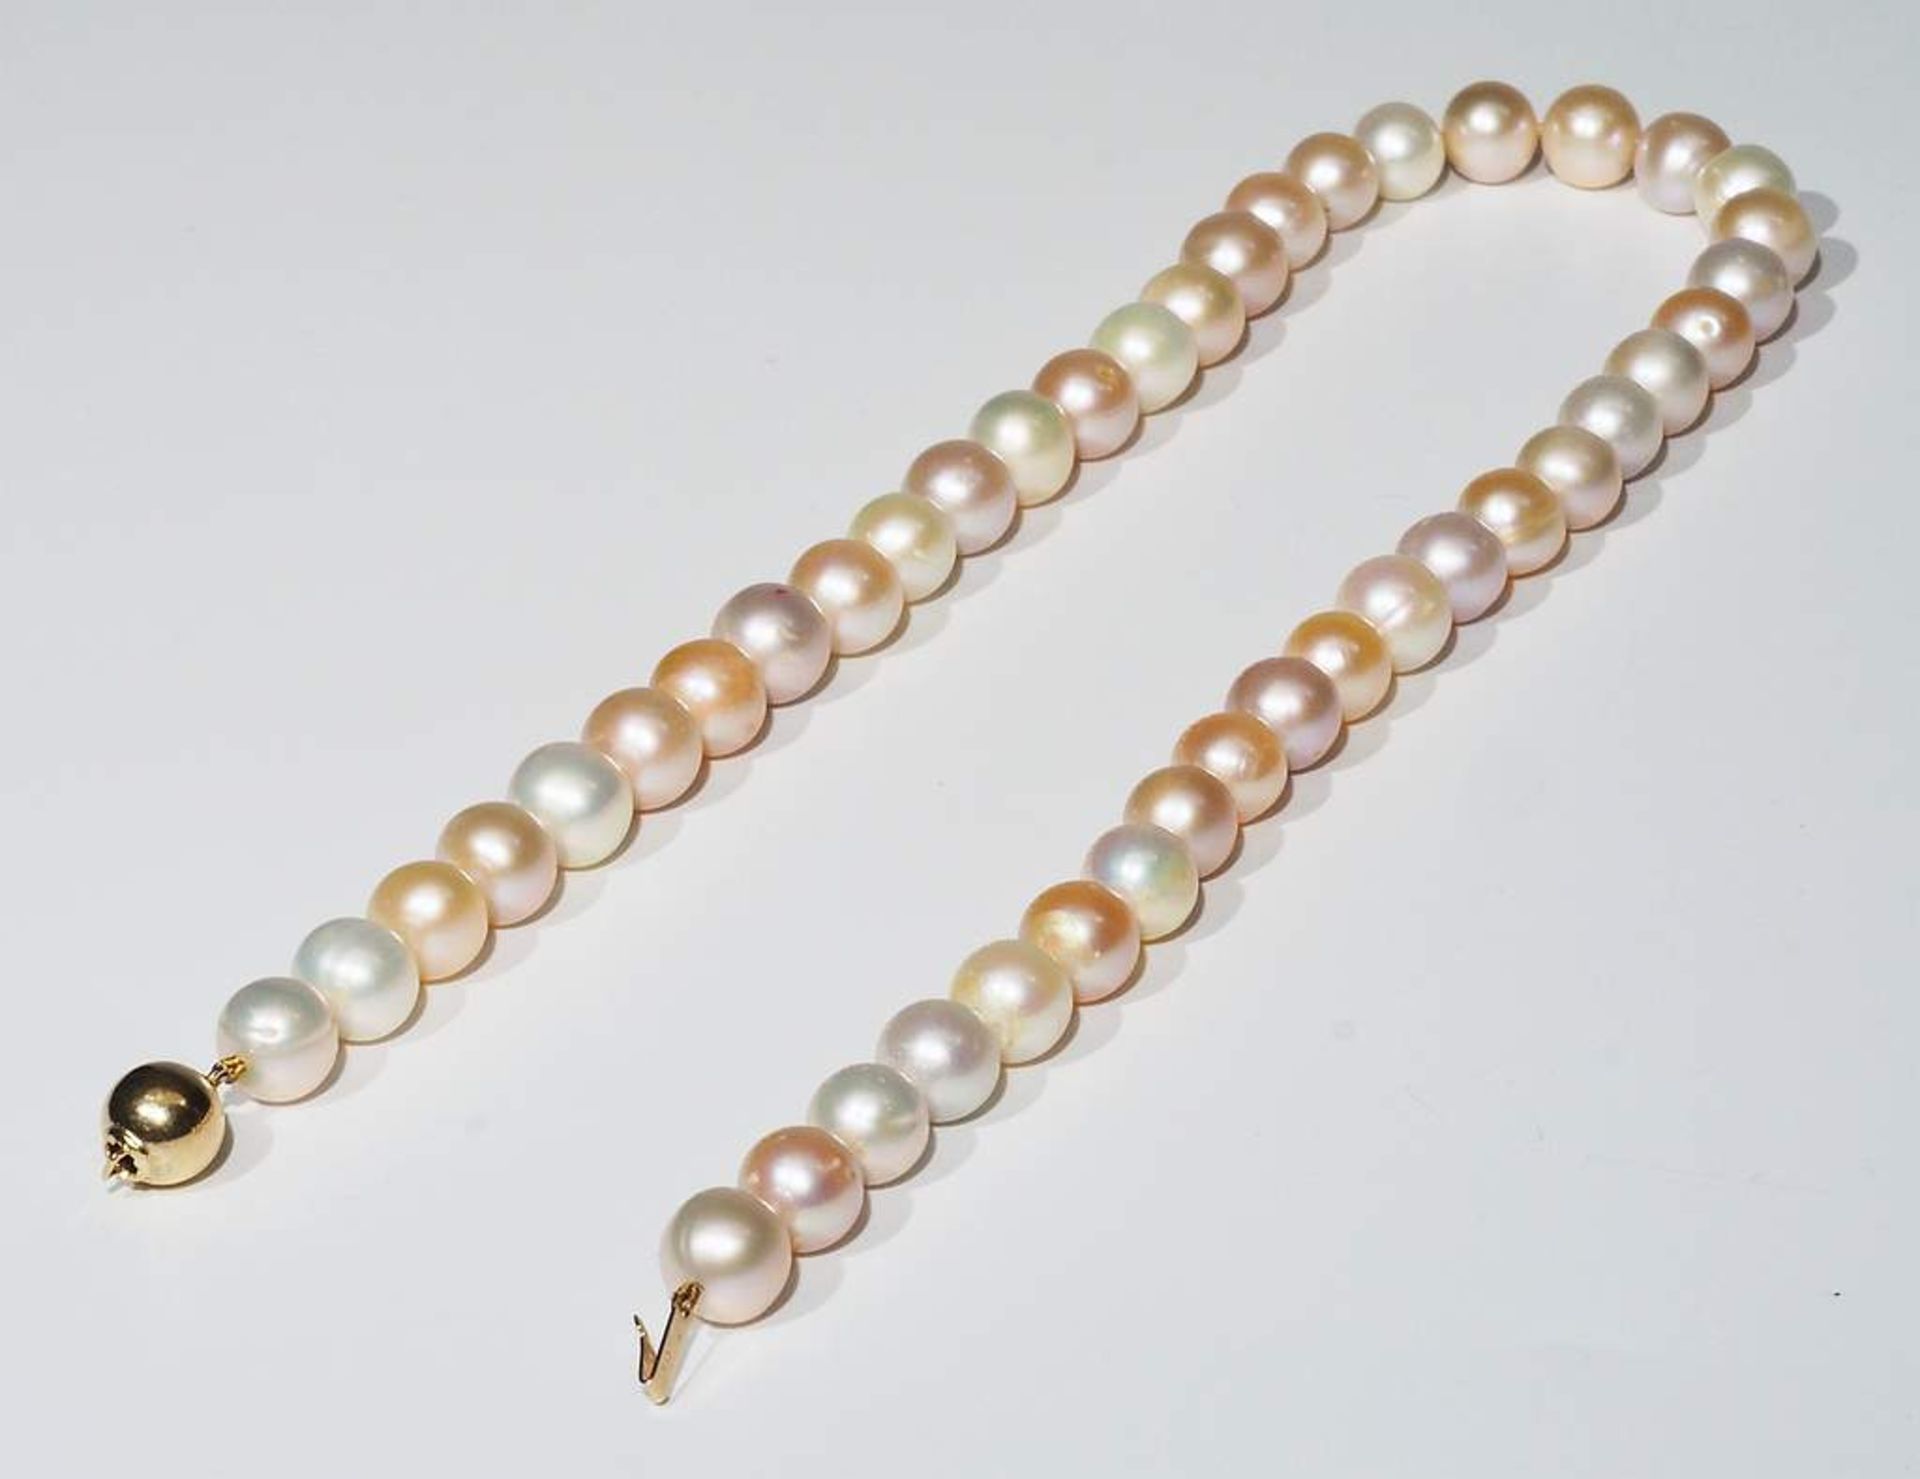 Multicolor Perlenkette in Pastelltönen mit 585er Gelbgoldverschluß. - Bild 7 aus 7